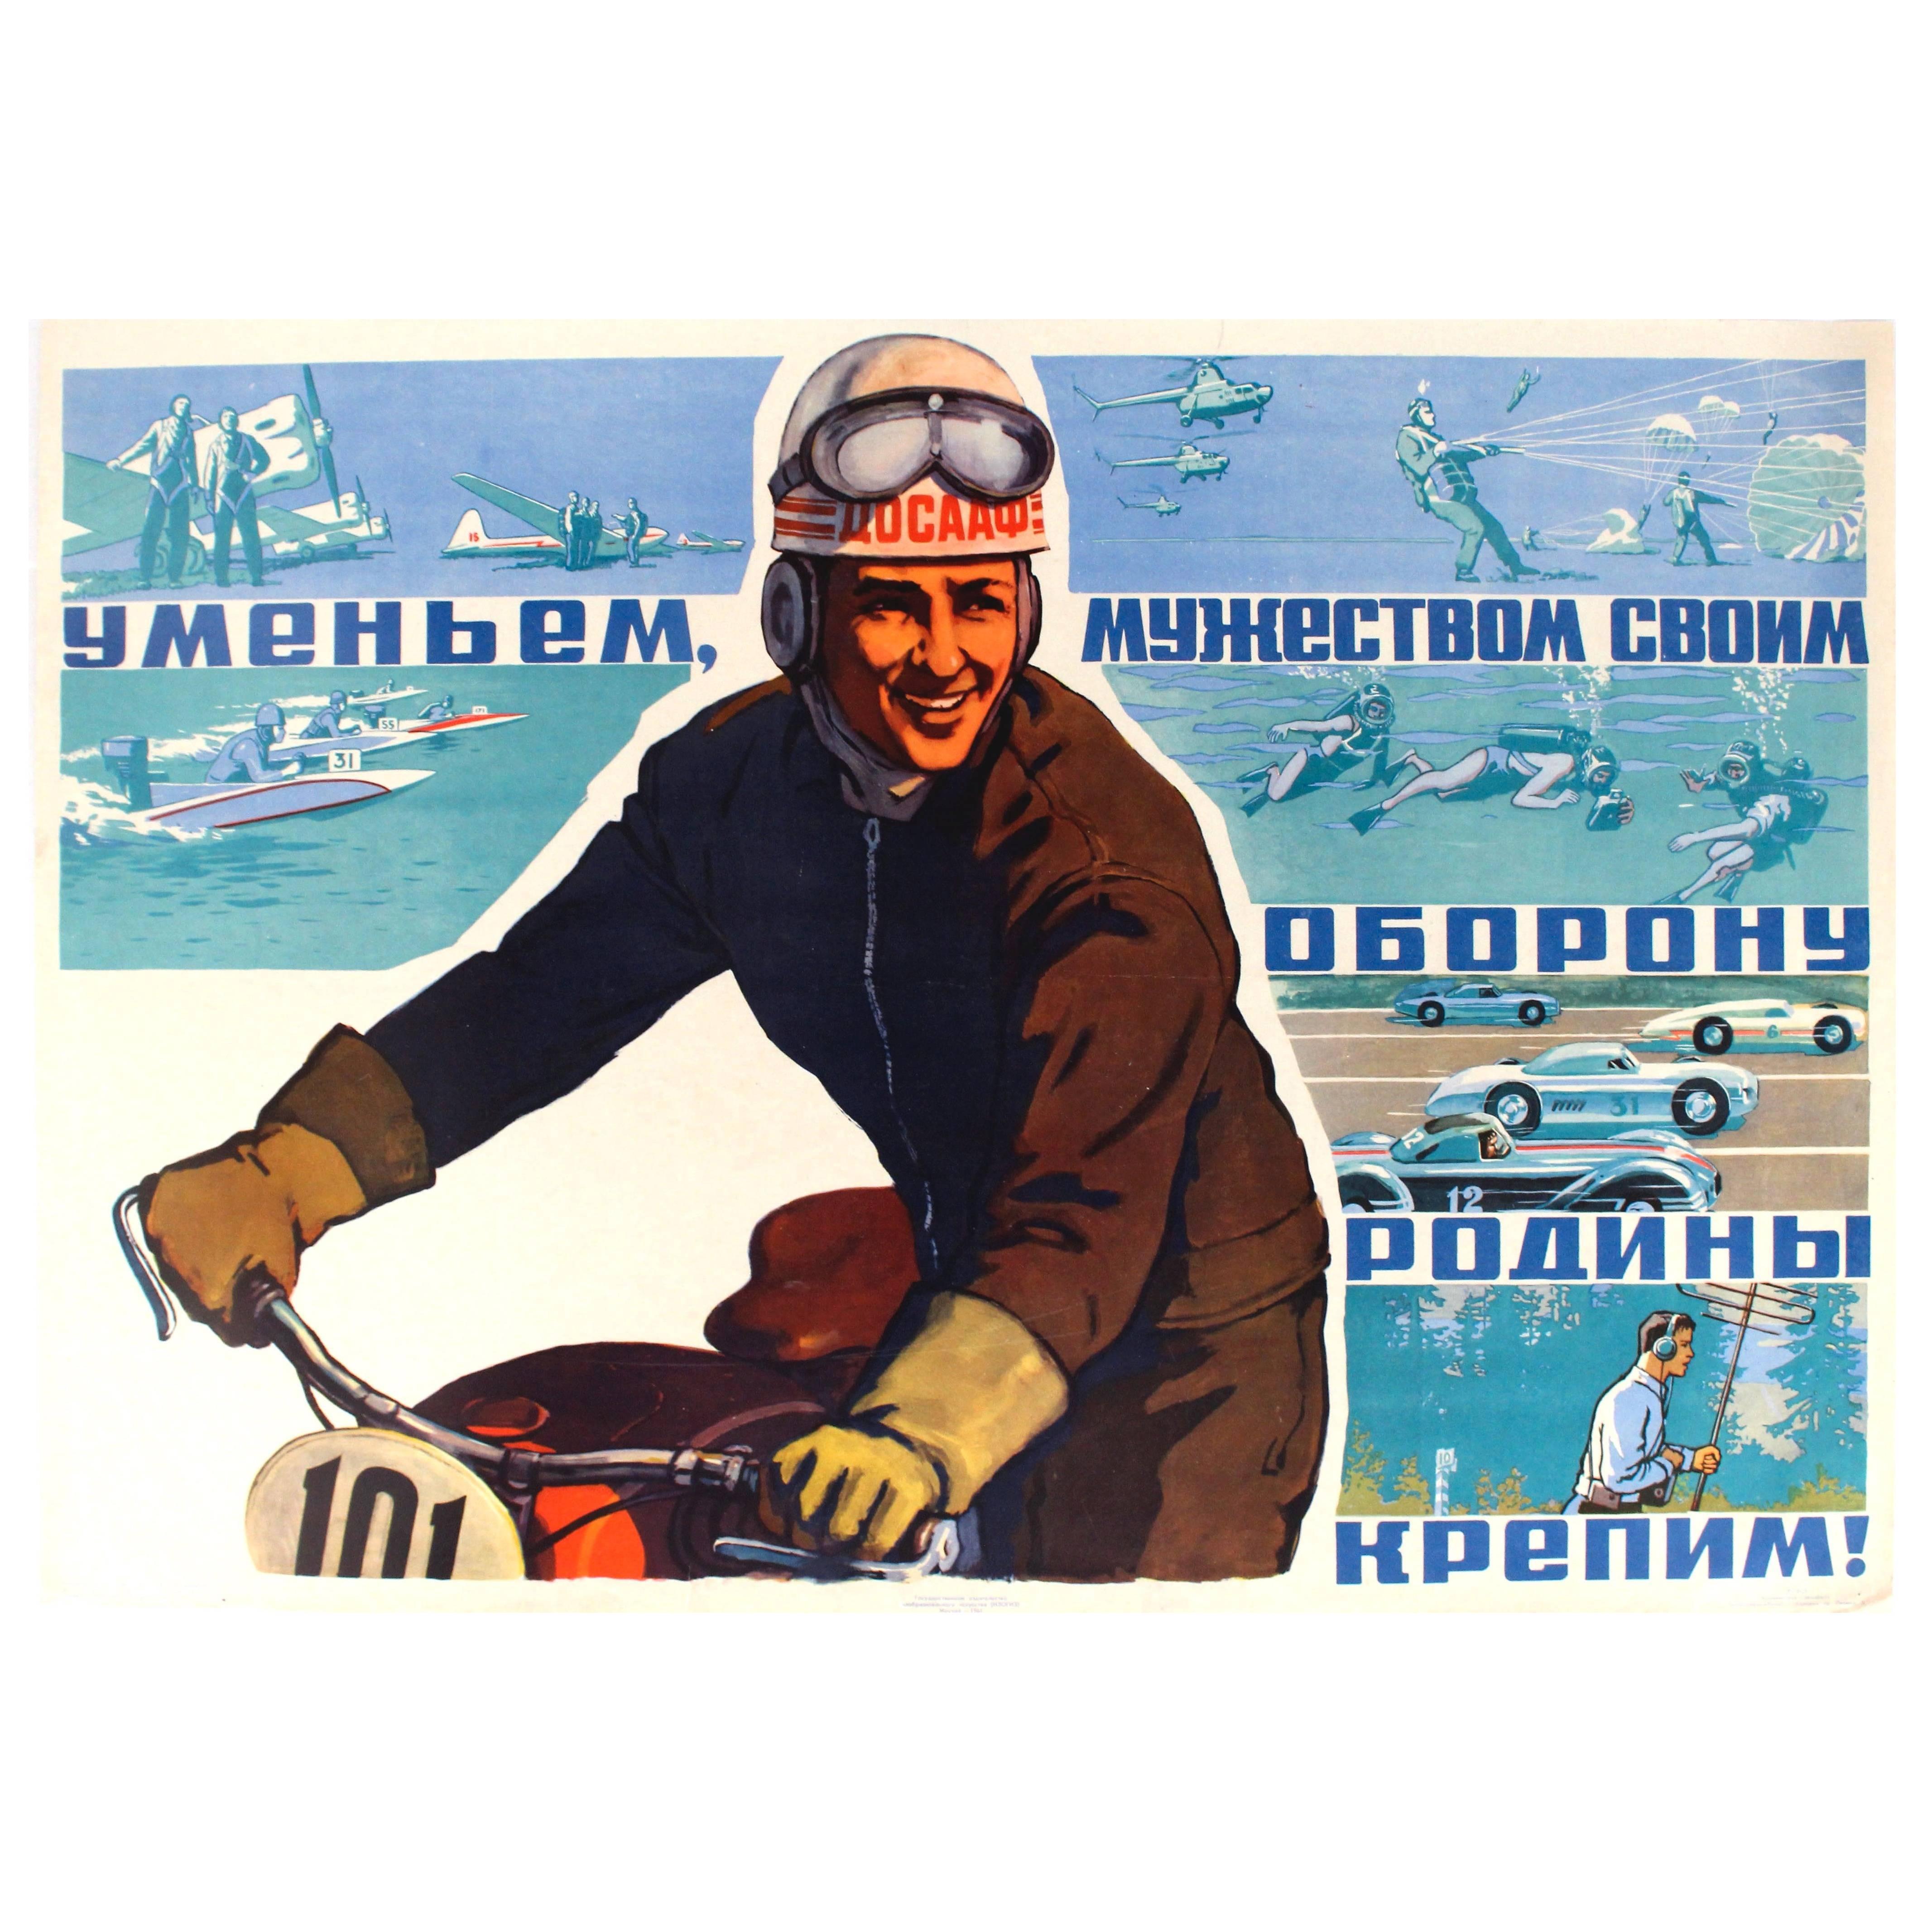 Originales sowjetisches Sportplakat mit Autorennen und Fallschirmsprüngen